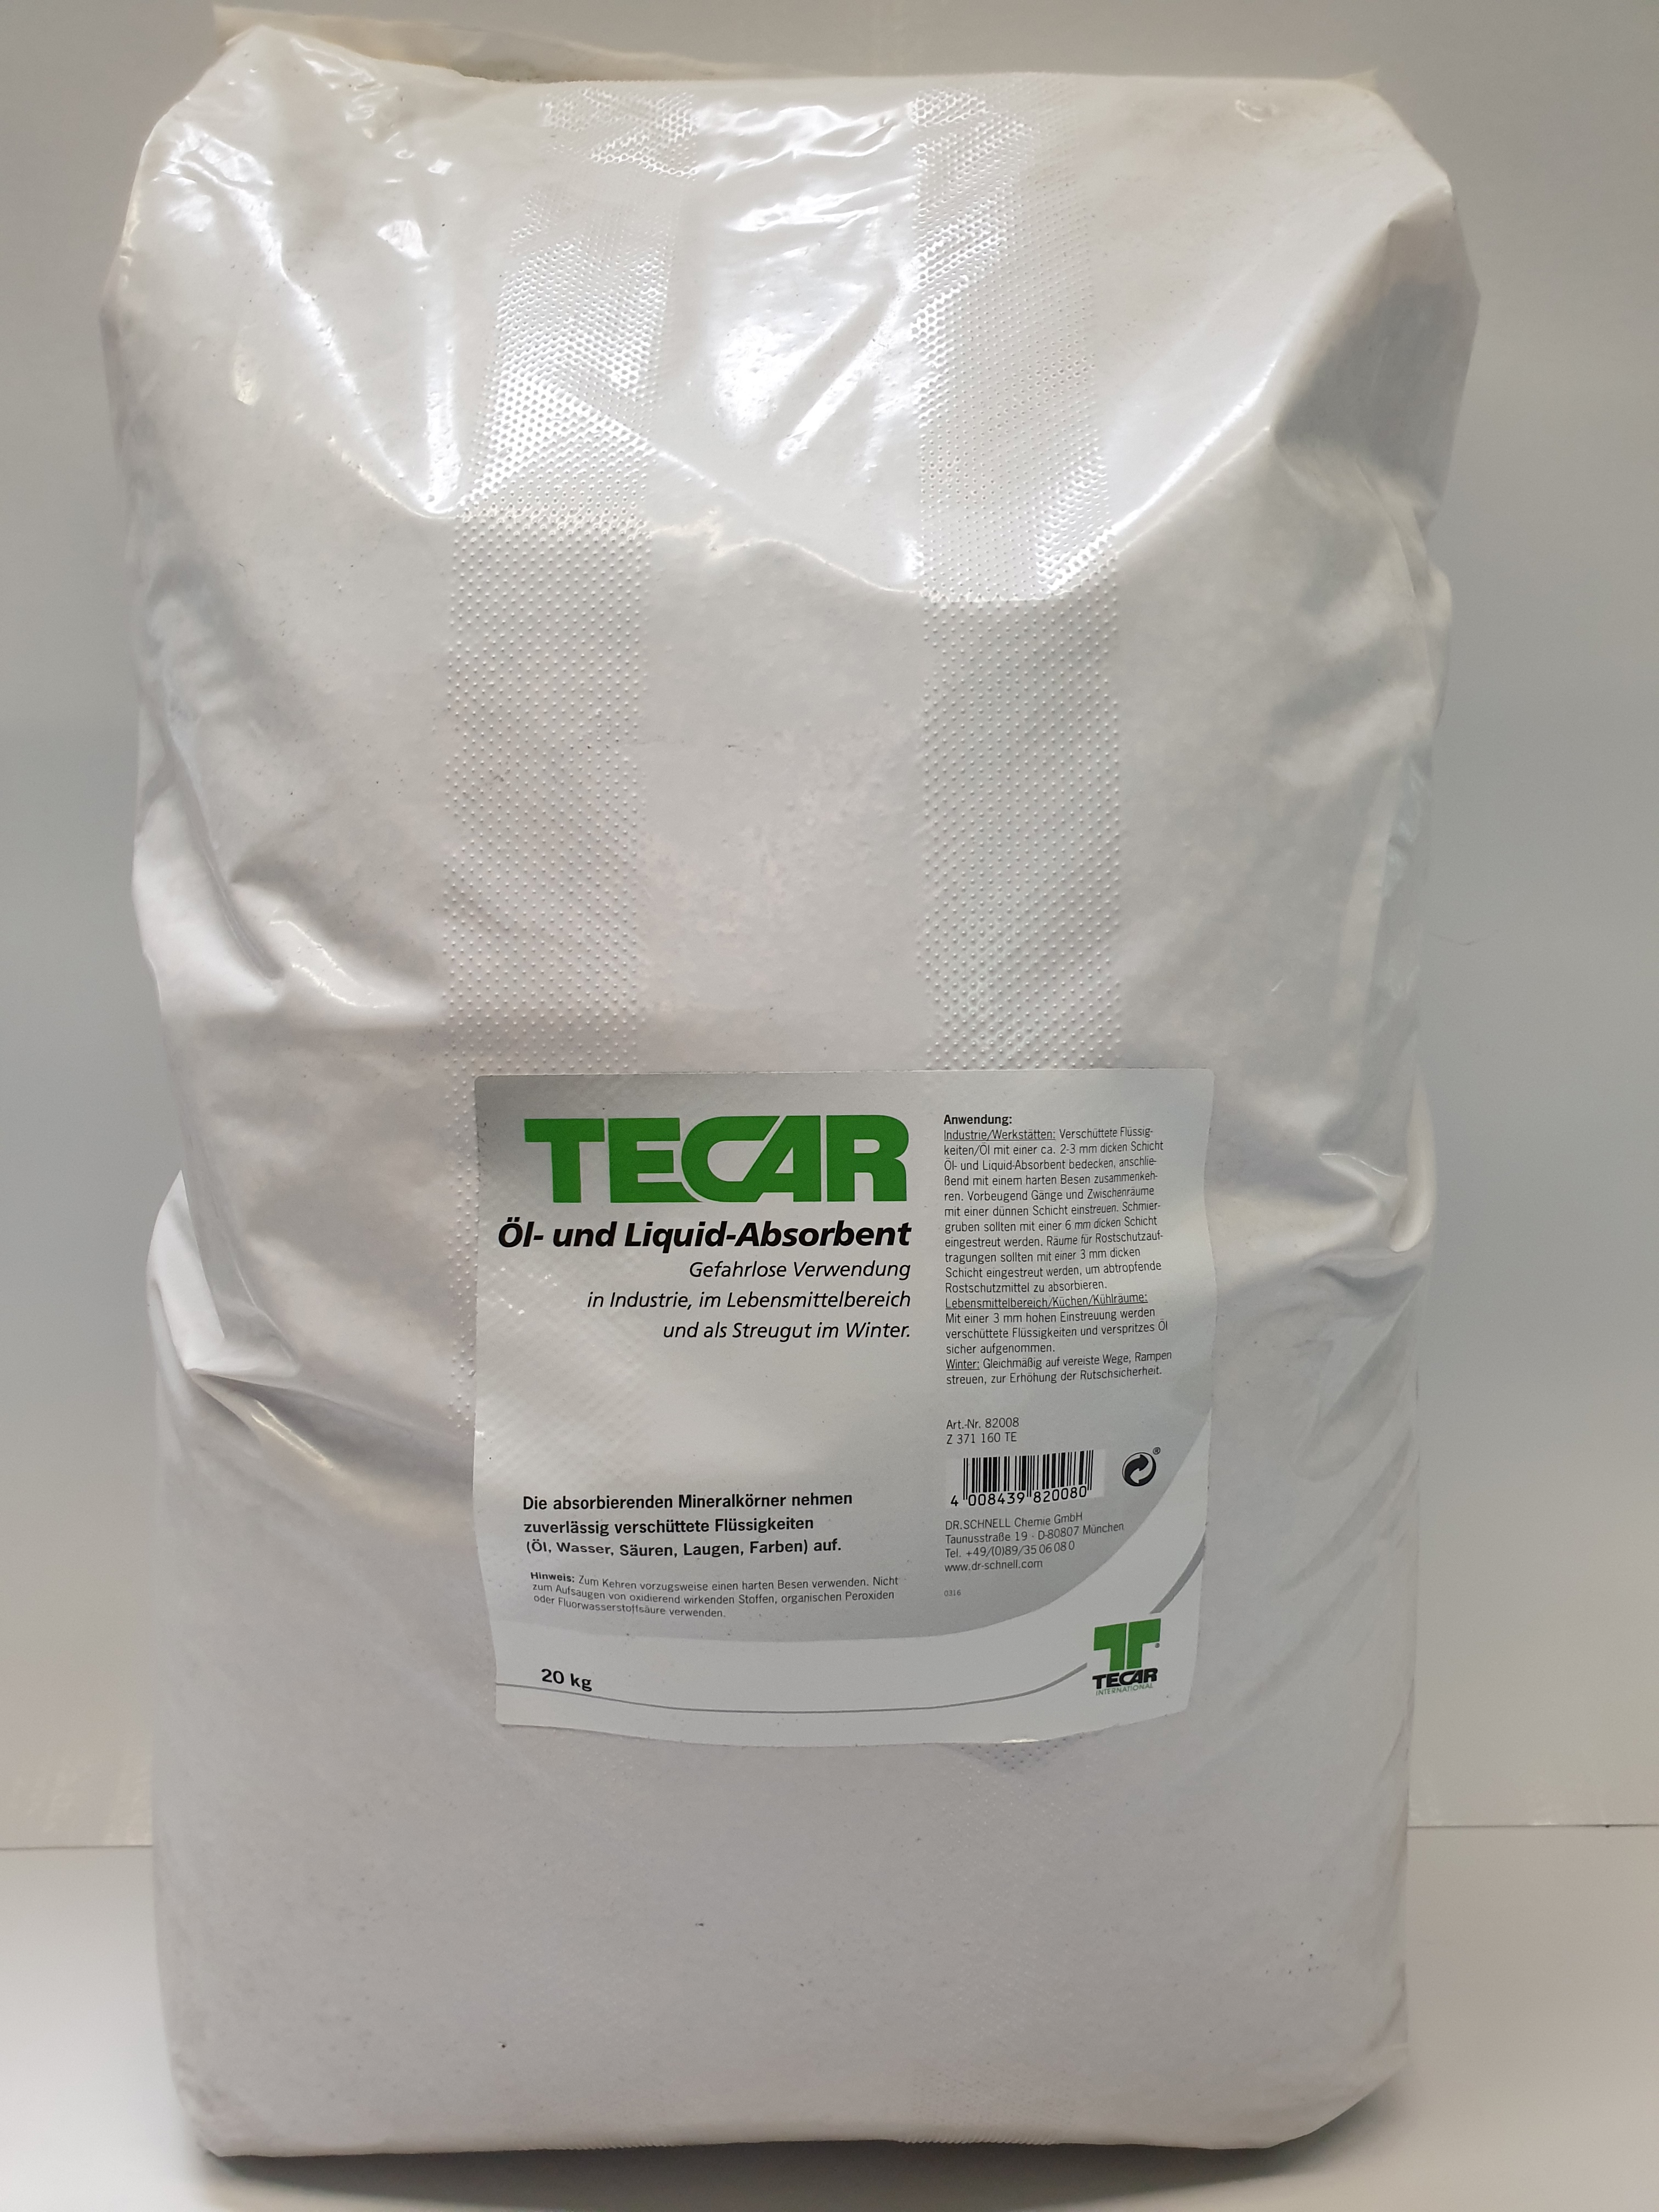 TECAR Öl-Absorbent und Liquid-Absorber,20kg, Bindemittel für Öl+Flüssigkeiten